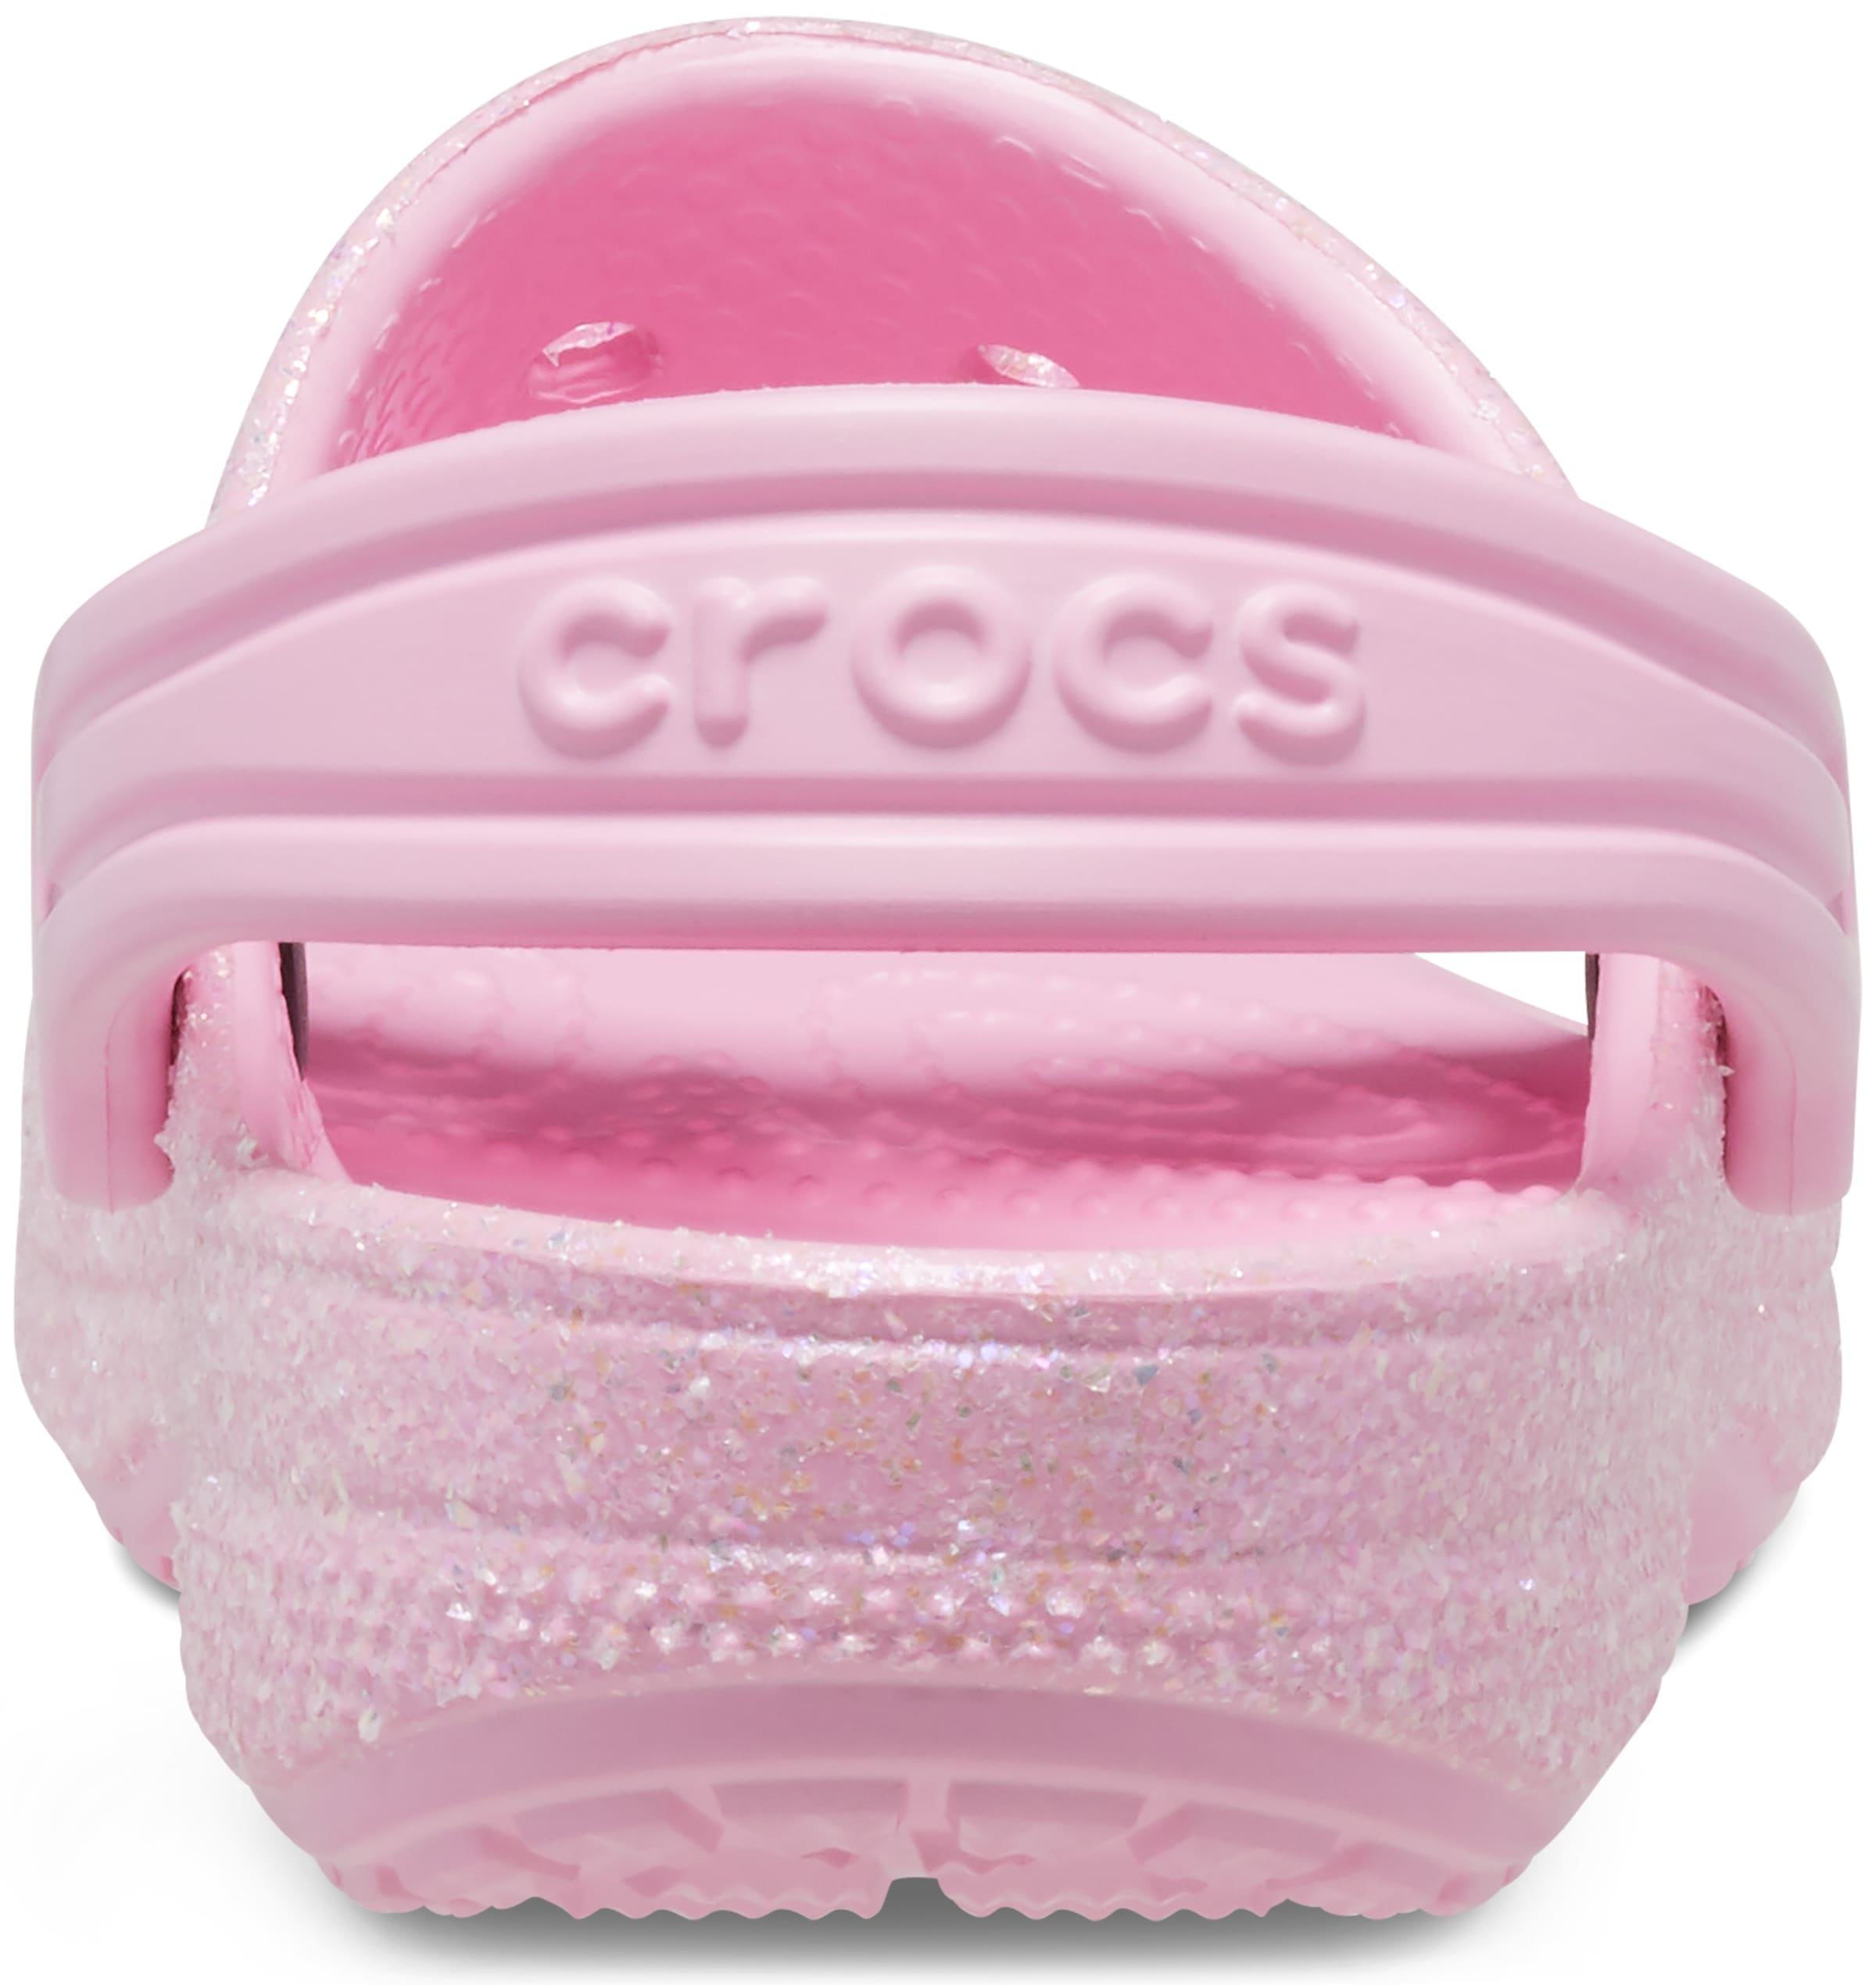 Crocs Badesandale »Classic Crocs Glitter Sandal T«, mit allover Glitzer für  Kinder | aktuell bei I\'m walking